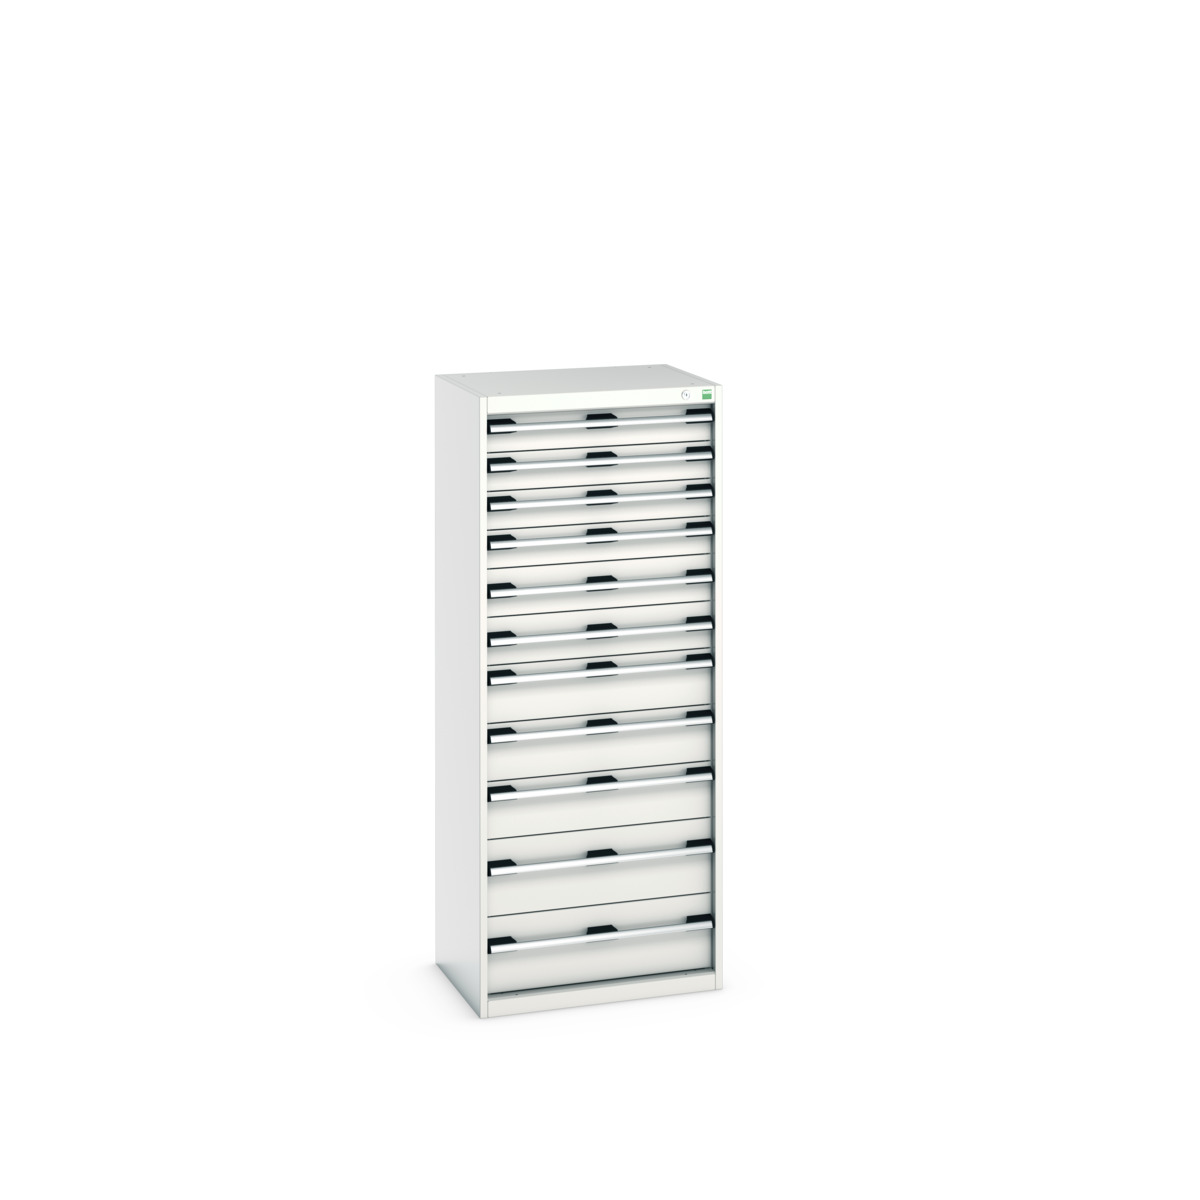 40011067.16V - cubio drawer cabinet